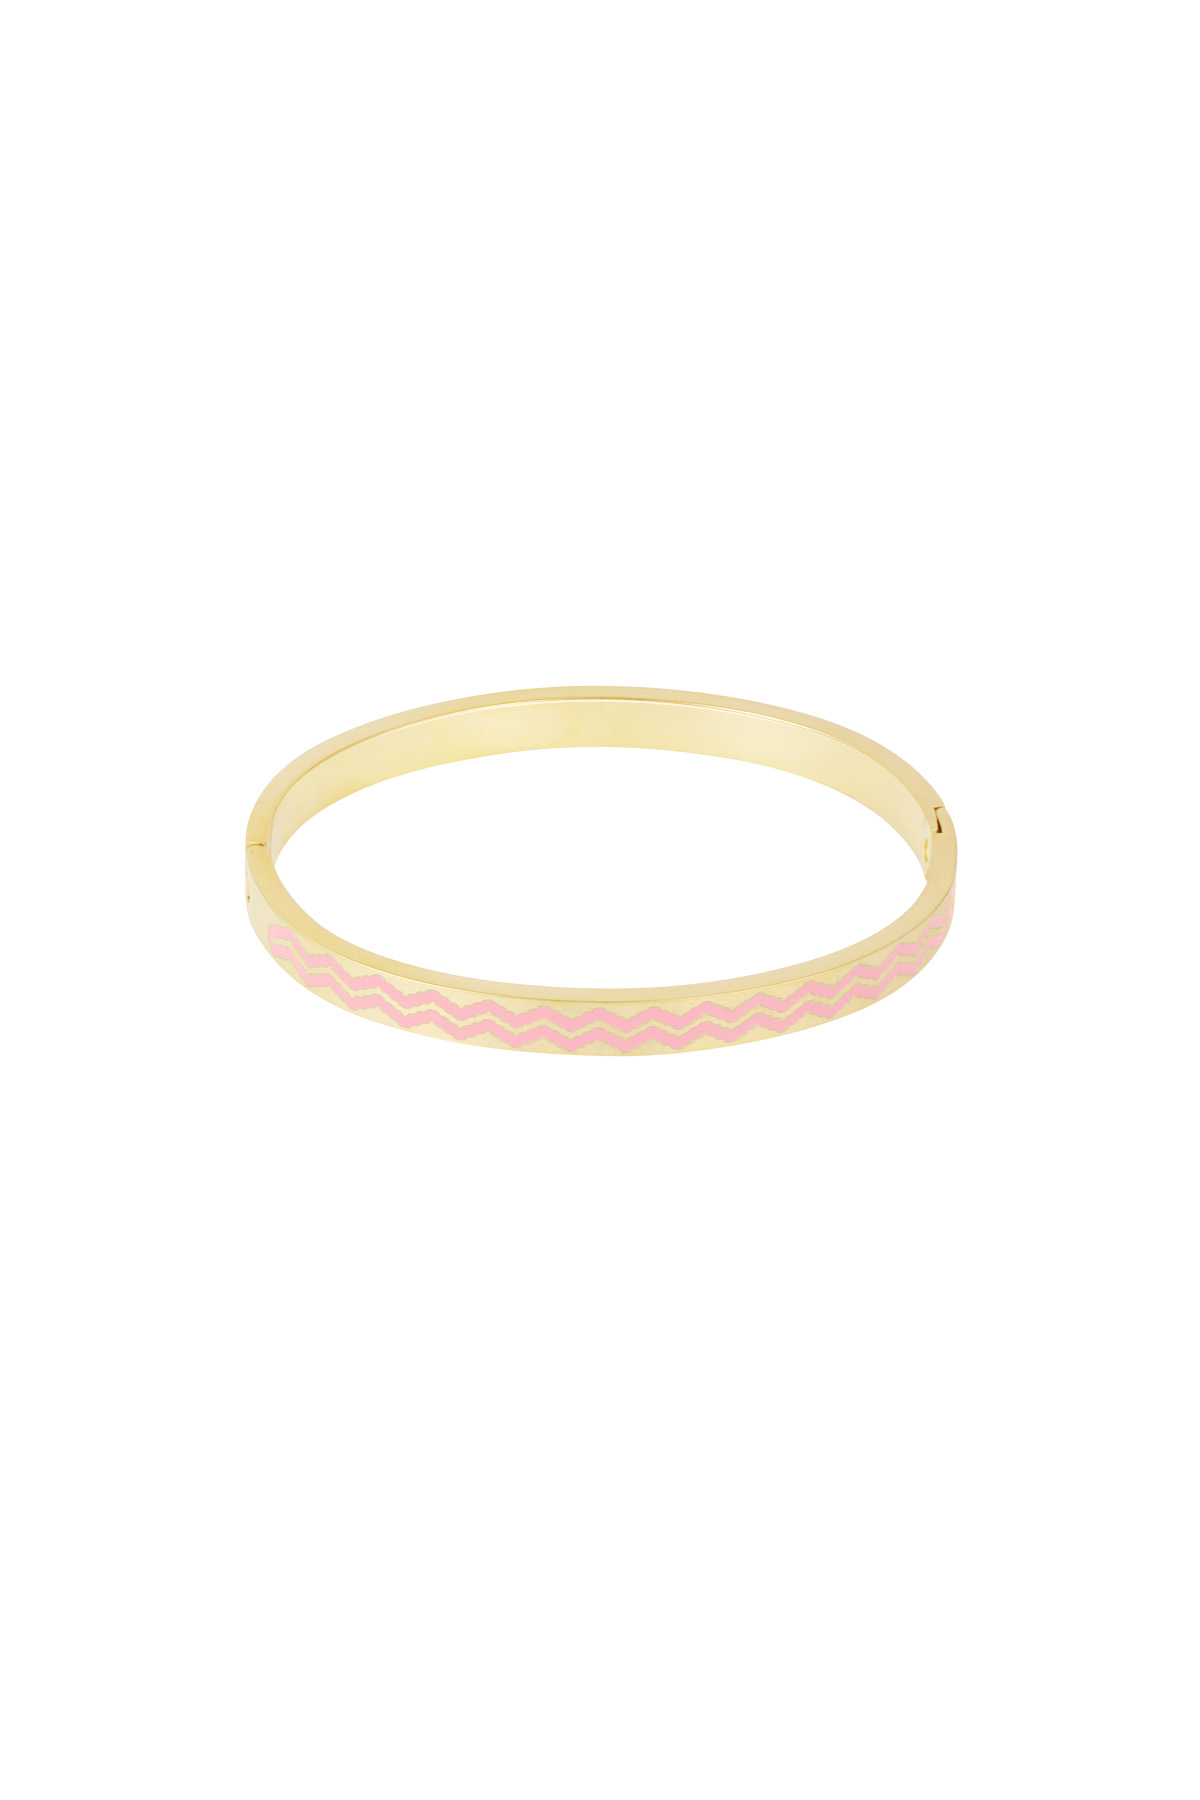 Slave bracelet with waves print - pink/gold  h5 